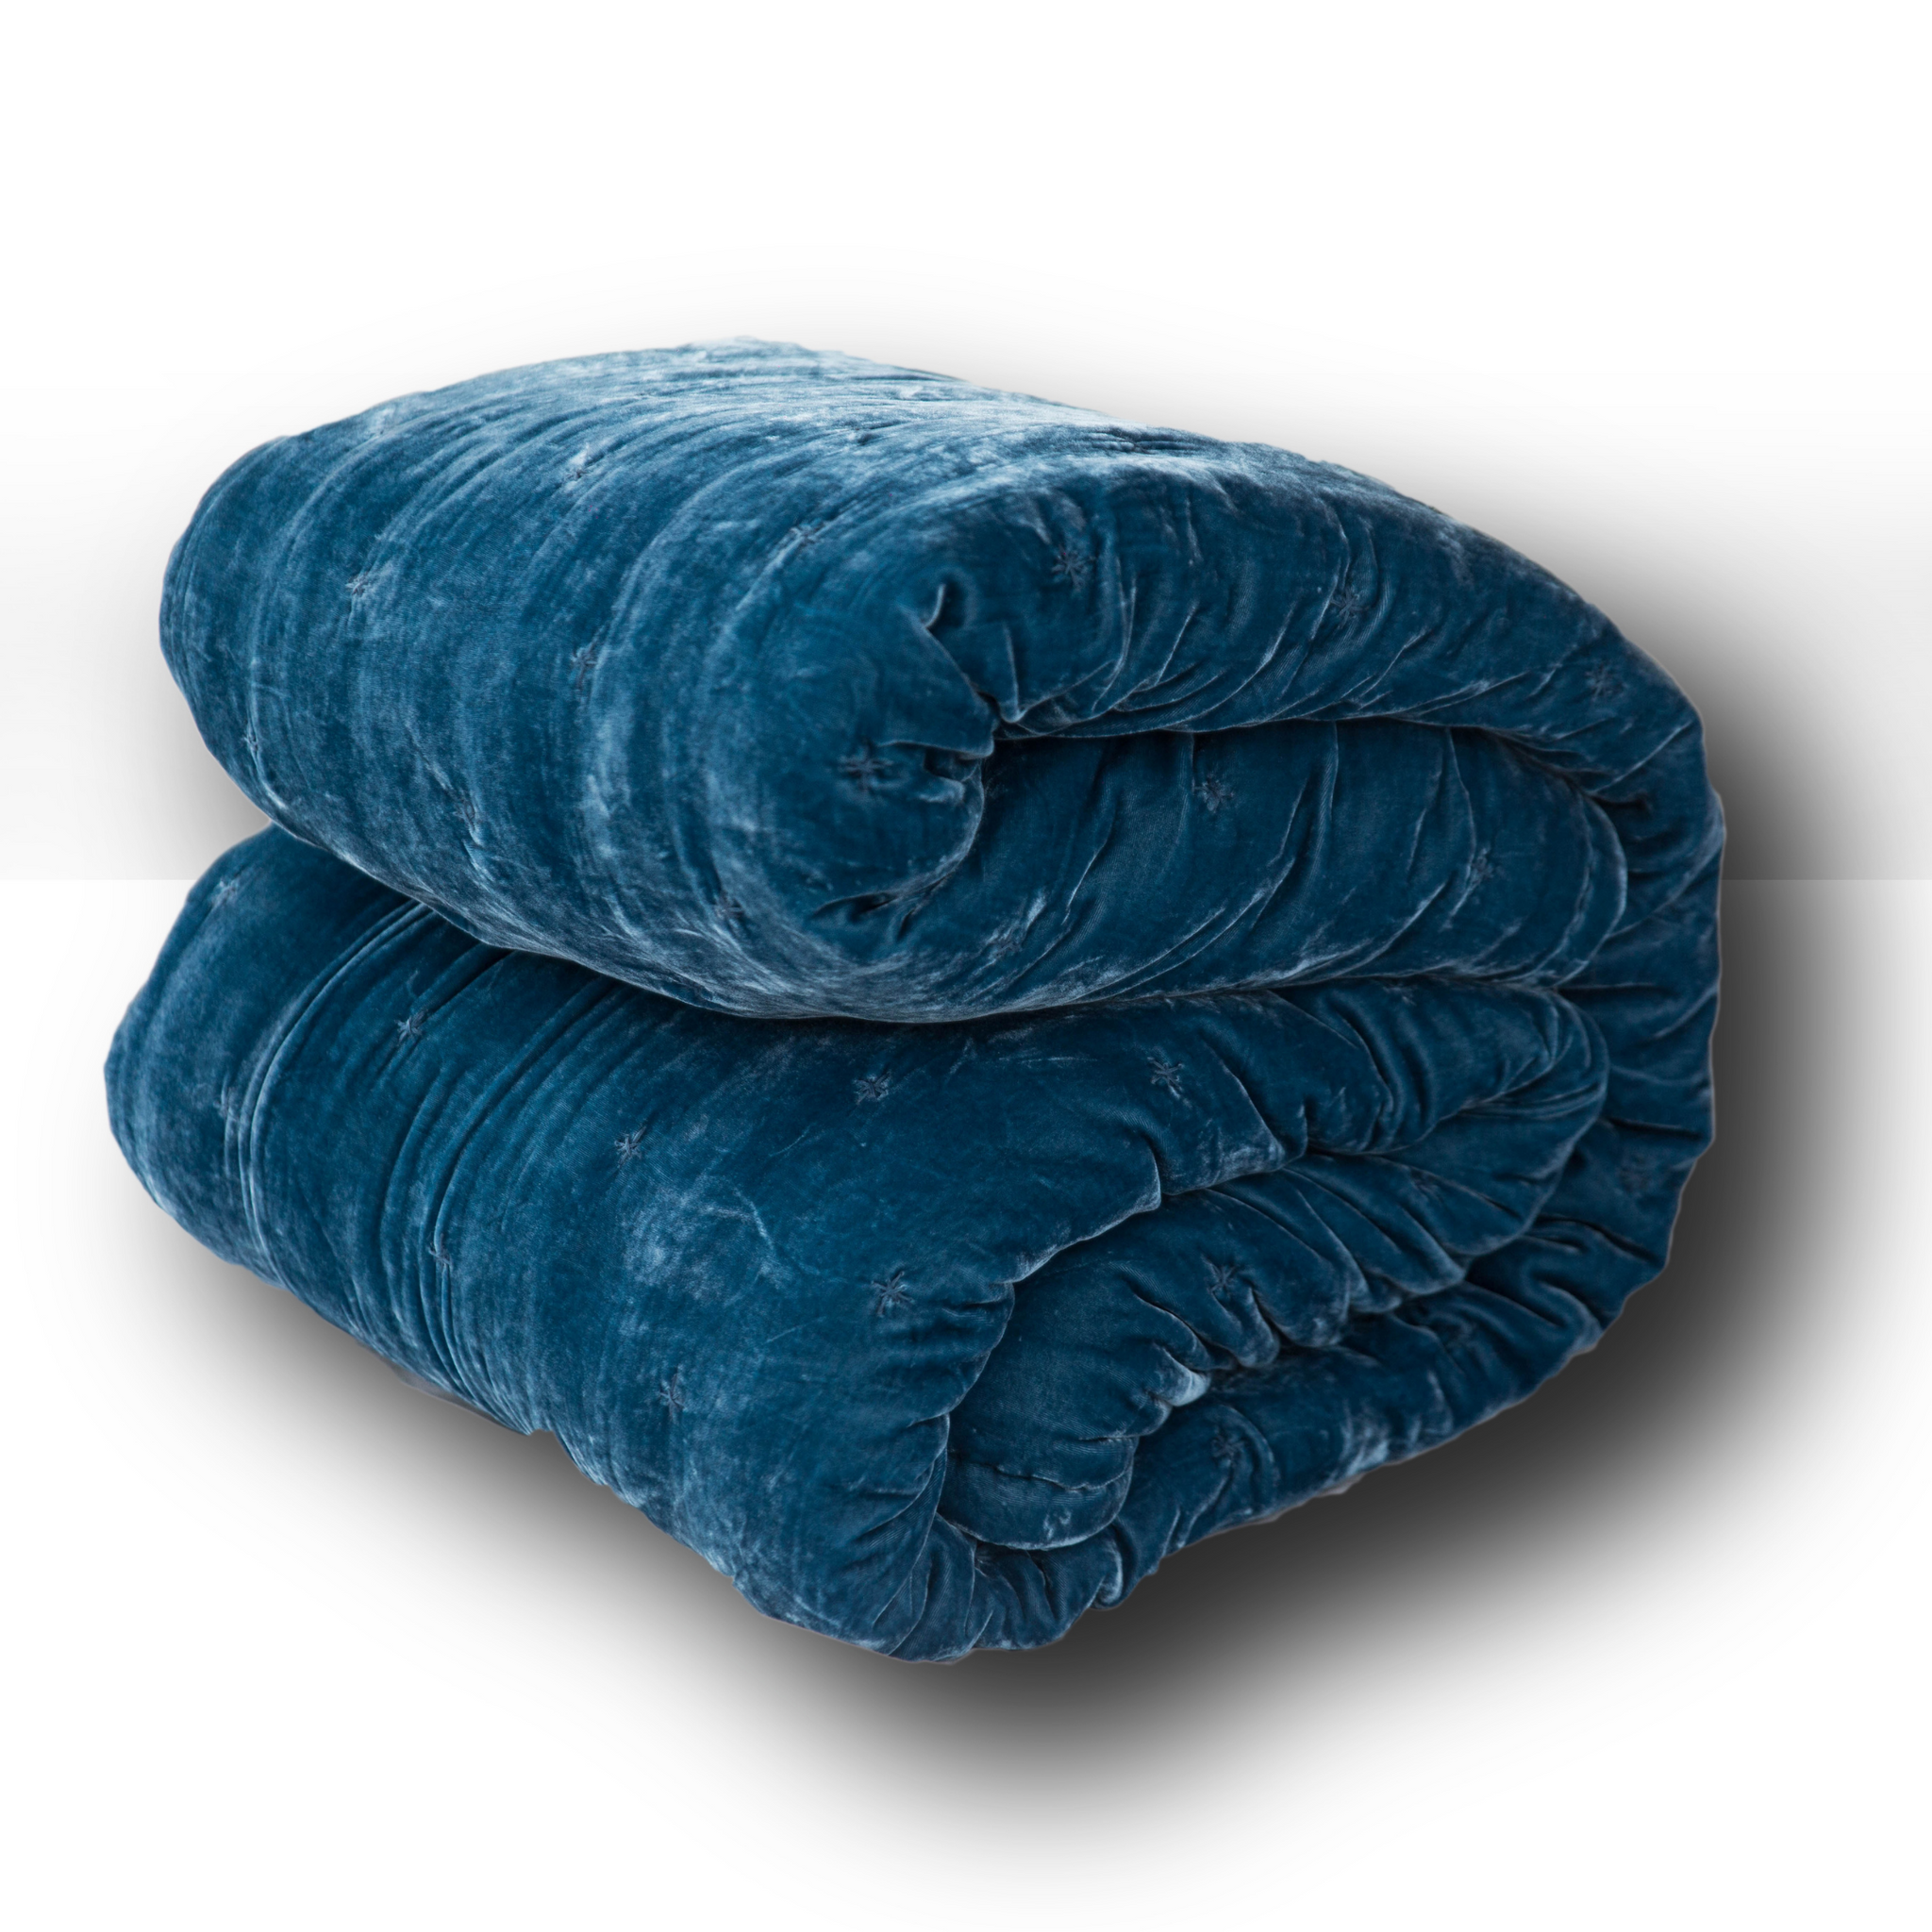 Starry Silk Velvet Quilted Duvet-Midnight Blue Double sided Silk Velvet